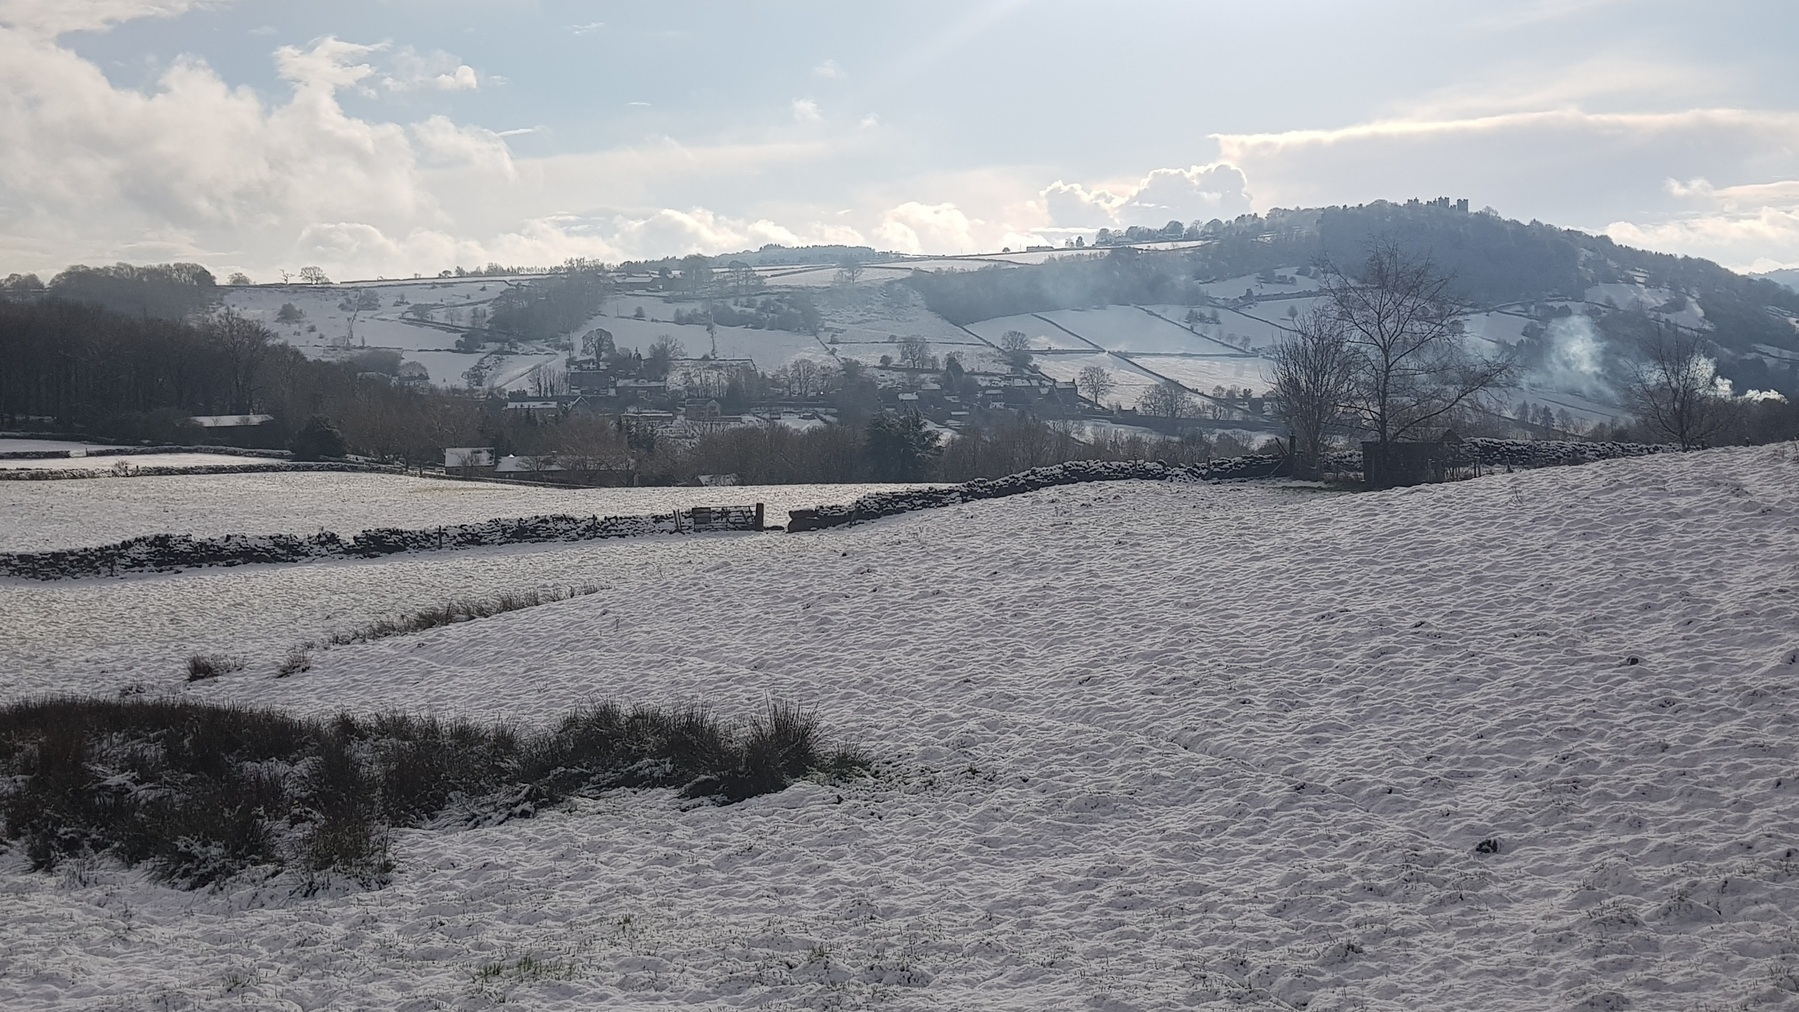 A landscape of snowy fields